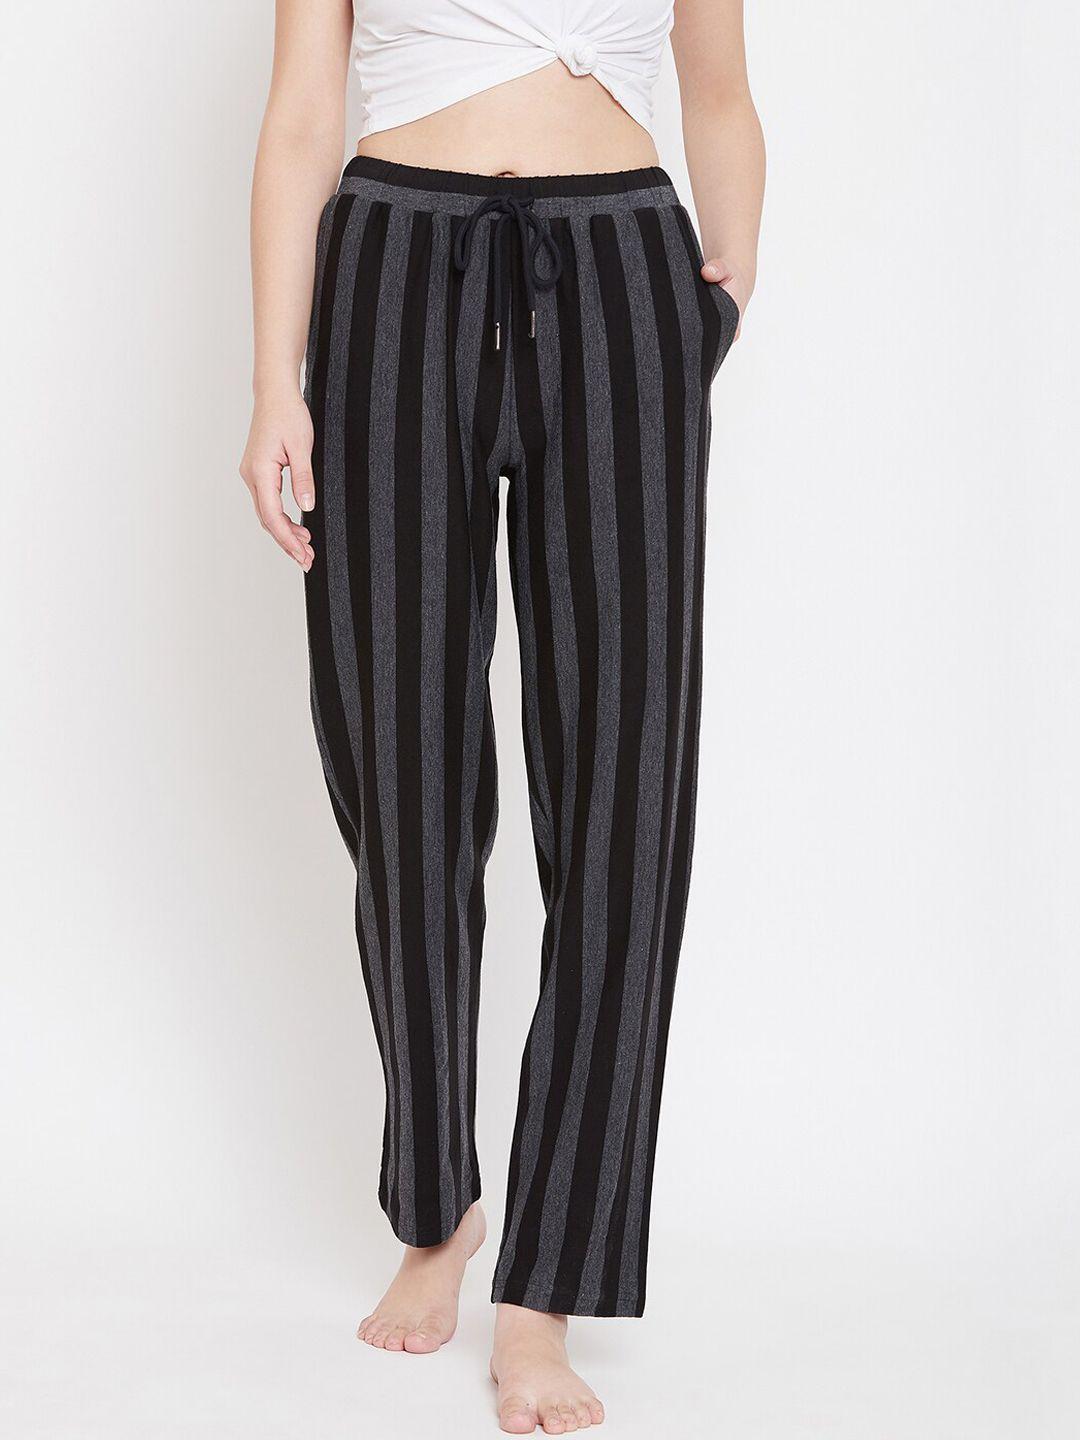 hypernation women black & grey striped lounge pants